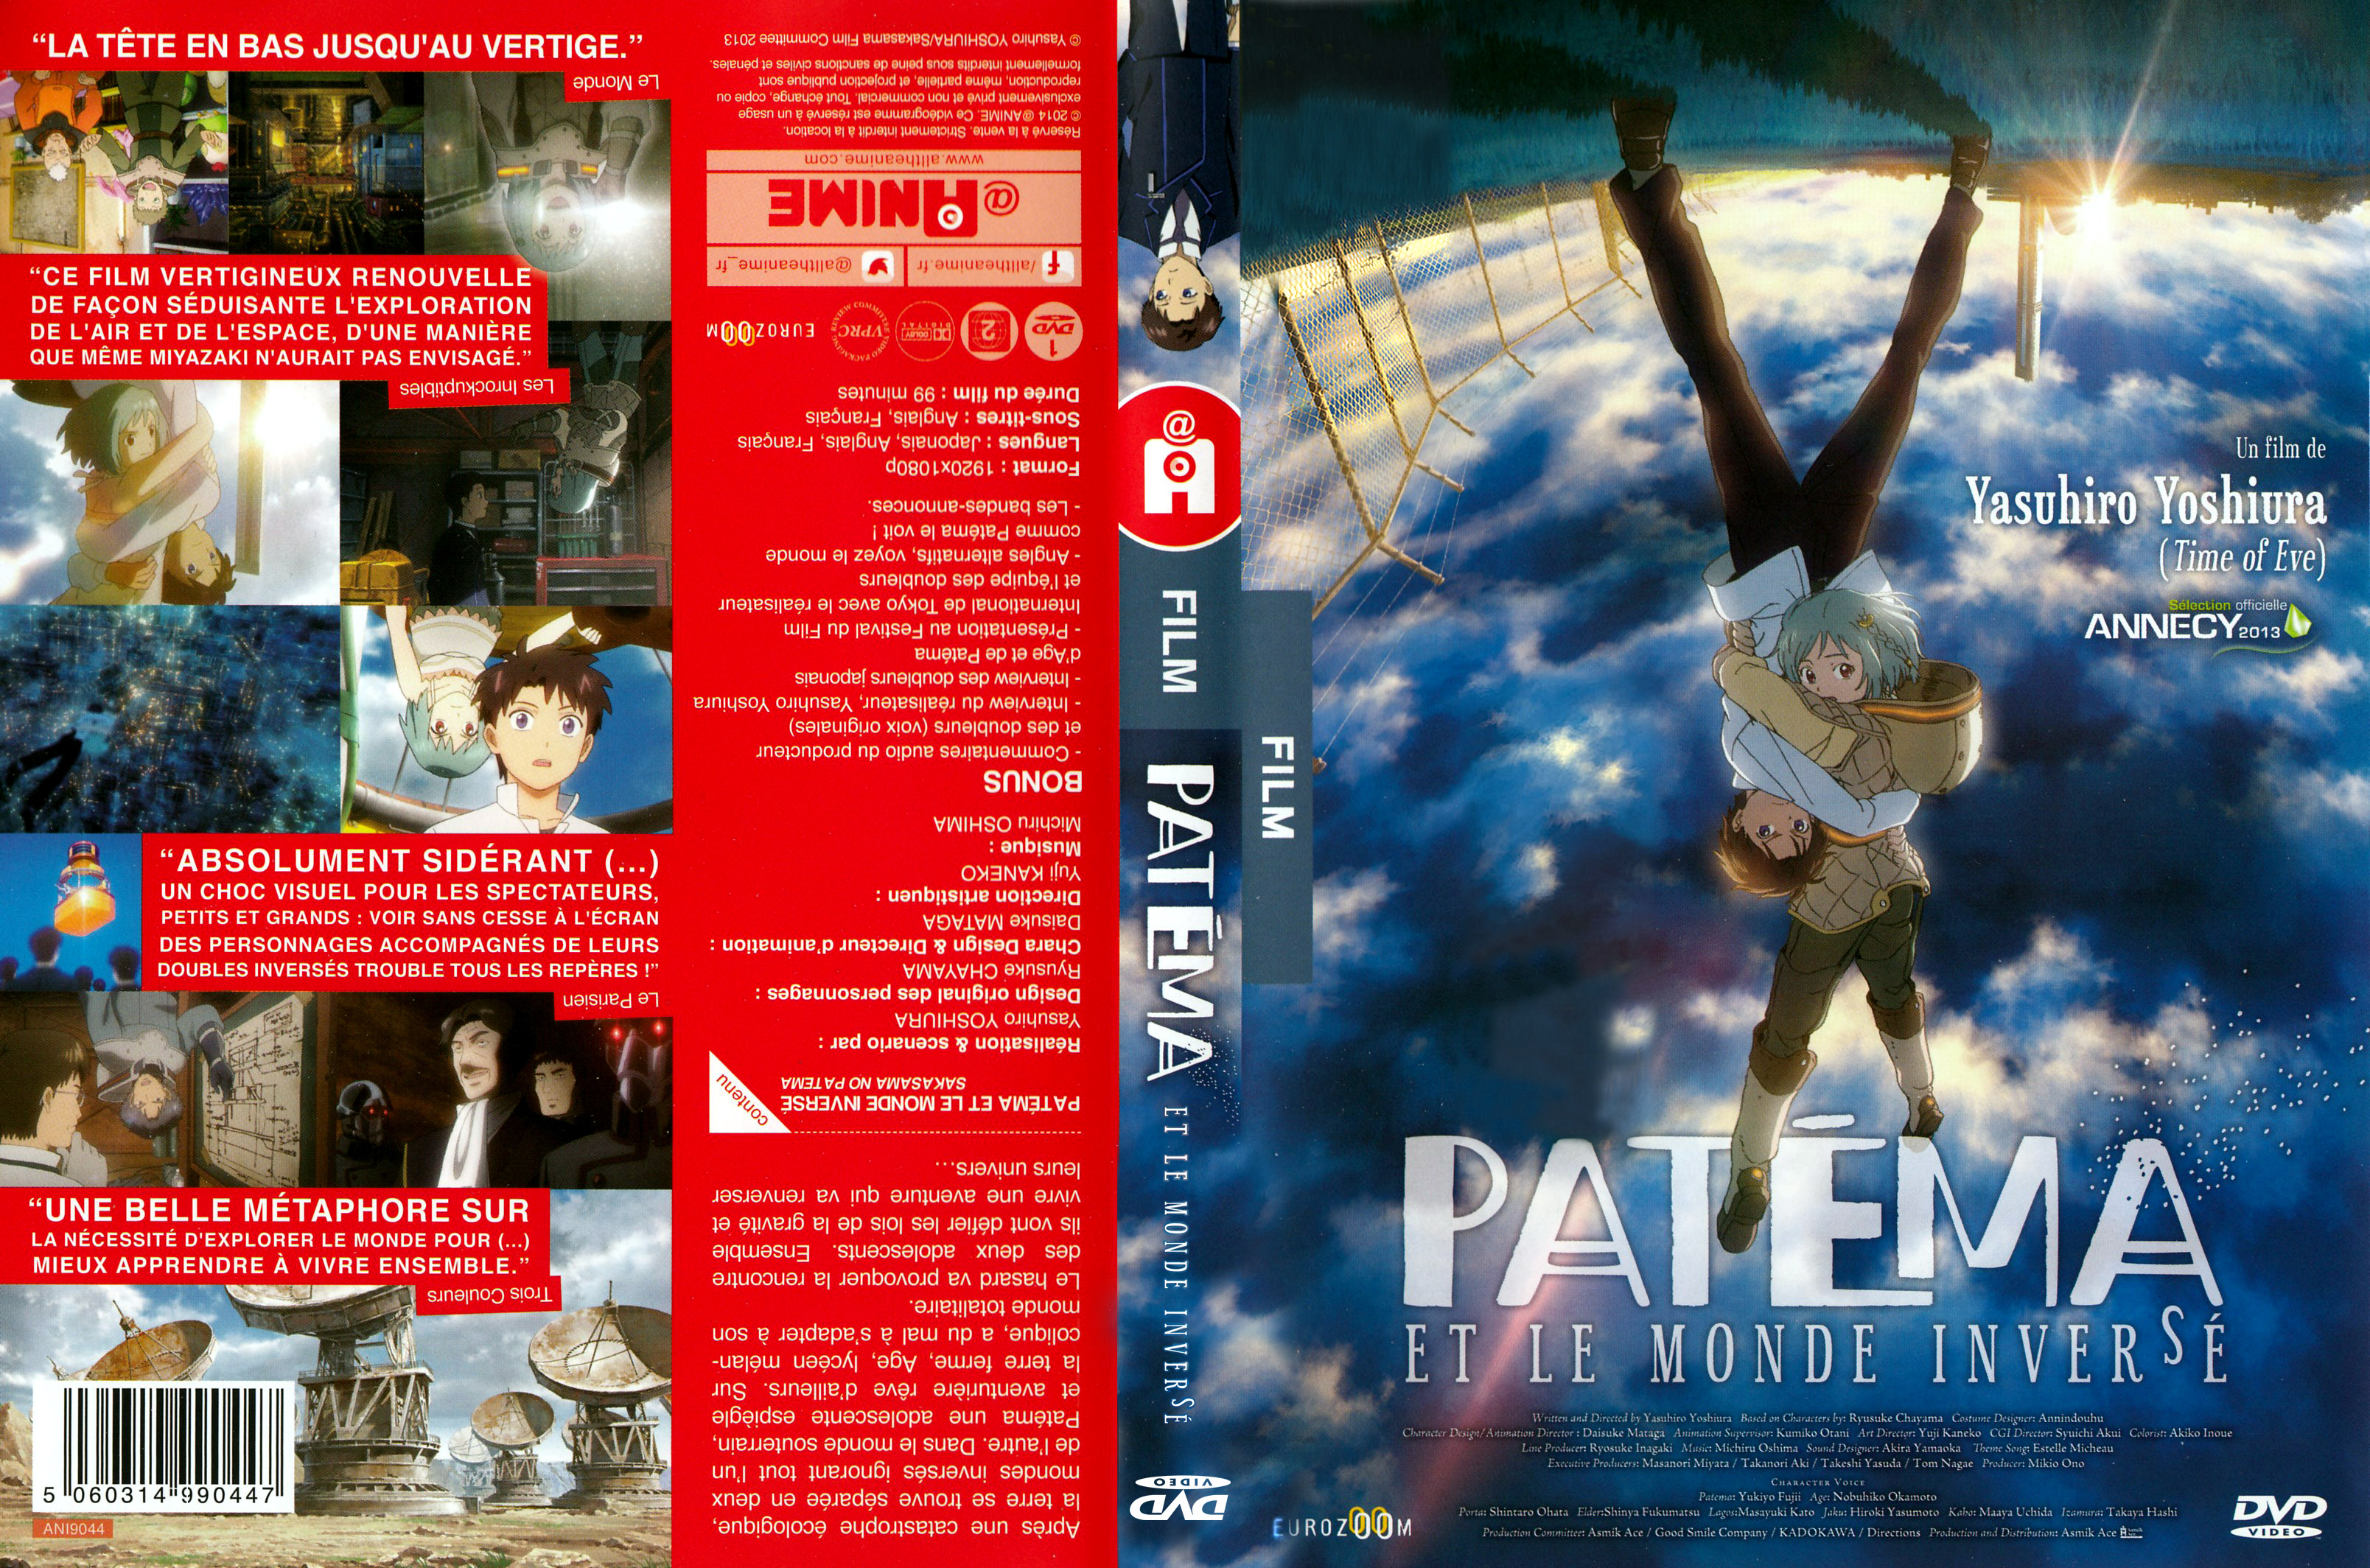 Jaquette DVD Patma et le monde invers